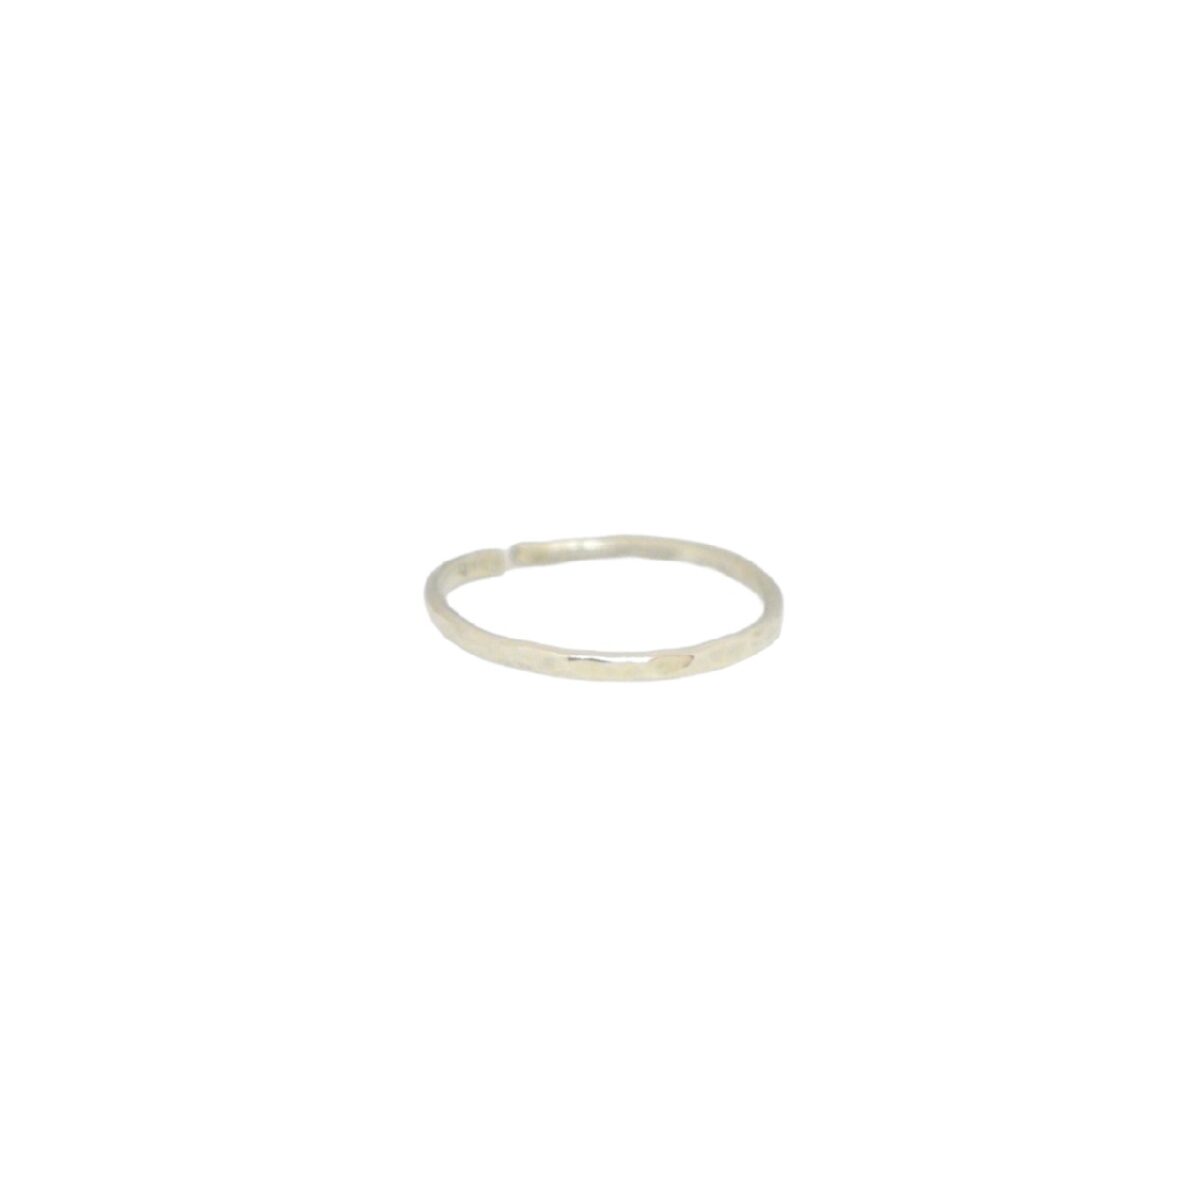 “Αφή” ασημένιο δαχτυλίδι “Αφή” ασημένιο δαχτυλίδι “Αφή” ασημένιο δαχτυλίδι 4